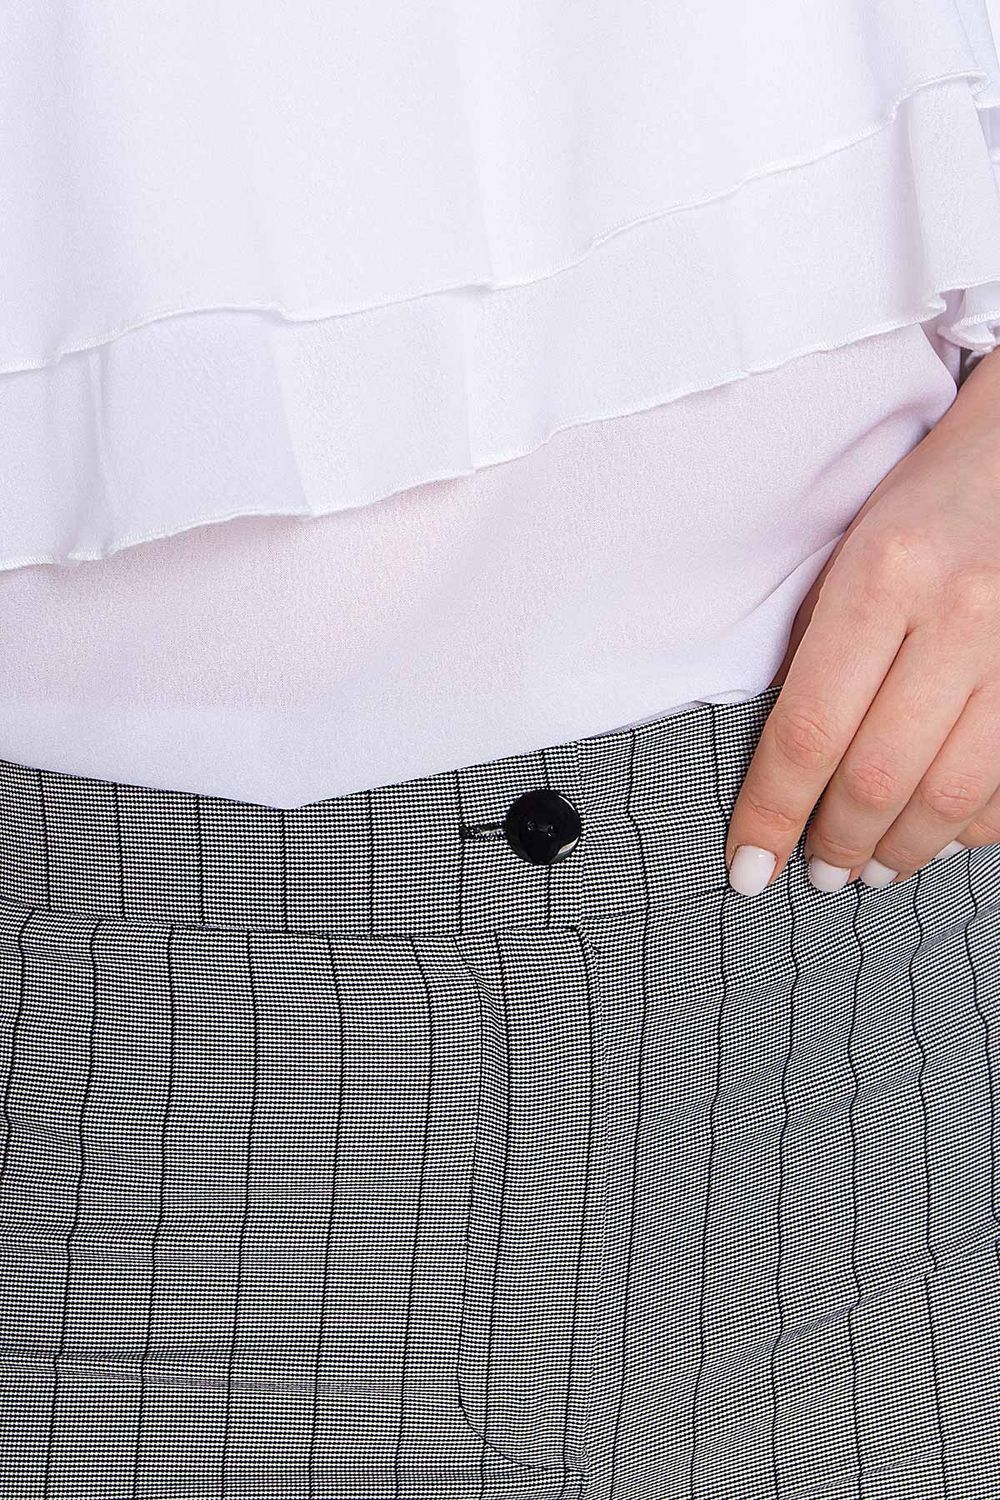 Женские брюки с завышенной талией в полоску - фото